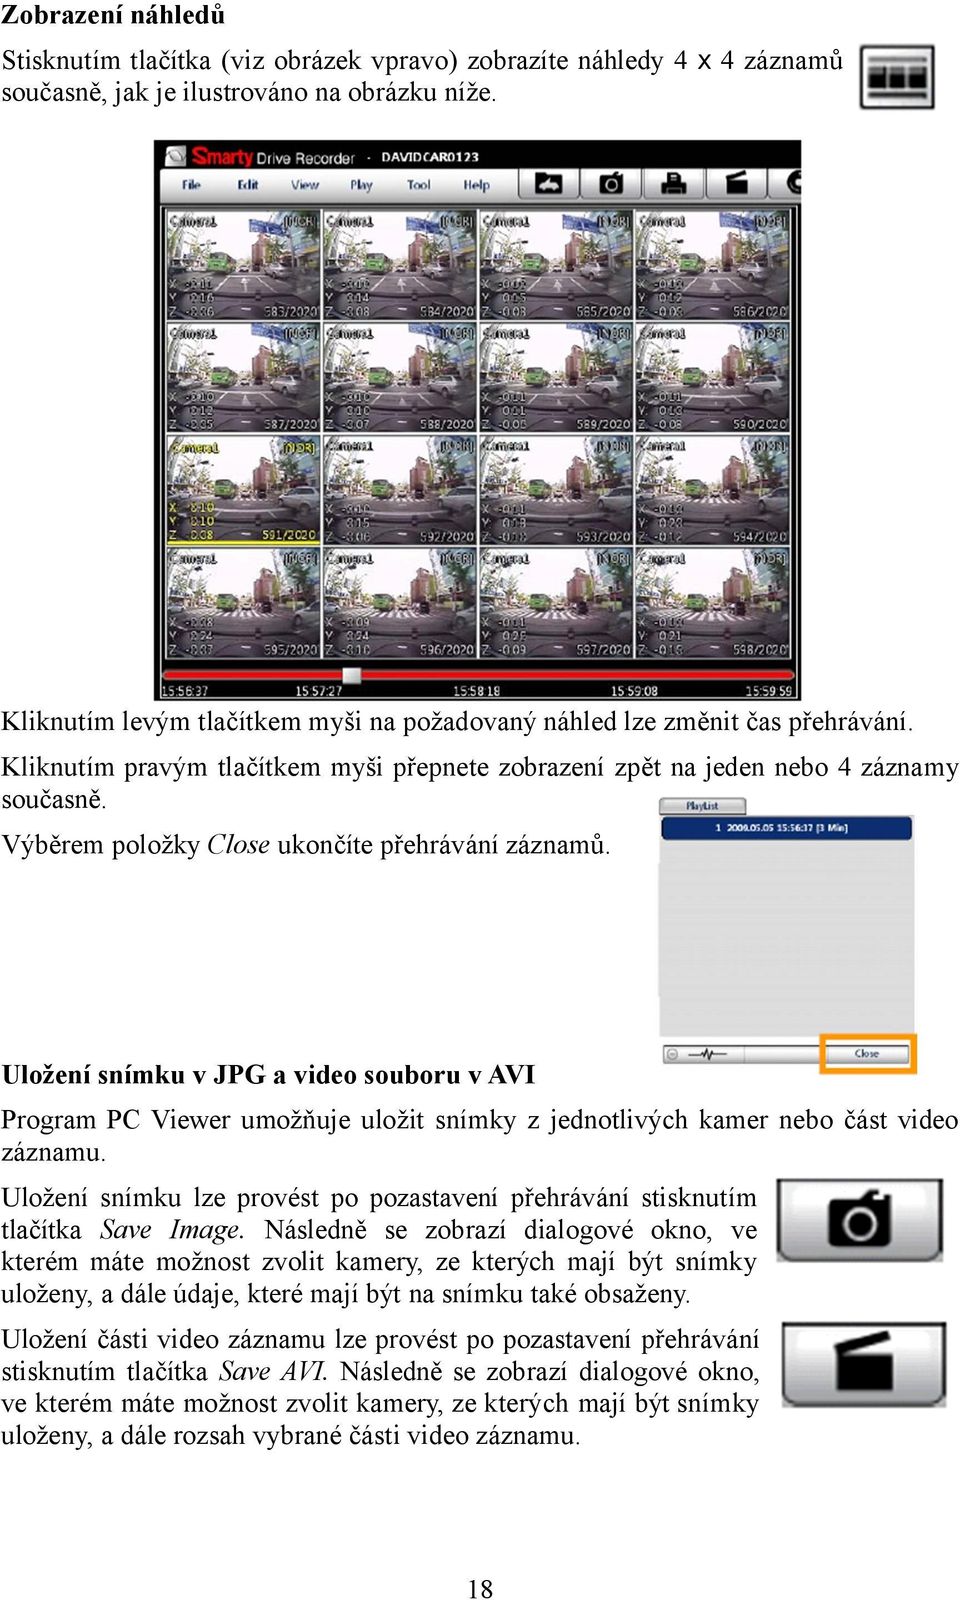 Výběrem položky Close ukončíte přehrávání záznamů. Uložení snímku v JPG a video souboru v AVI Program PC Viewer umožňuje uložit snímky z jednotlivých kamer nebo část video záznamu.